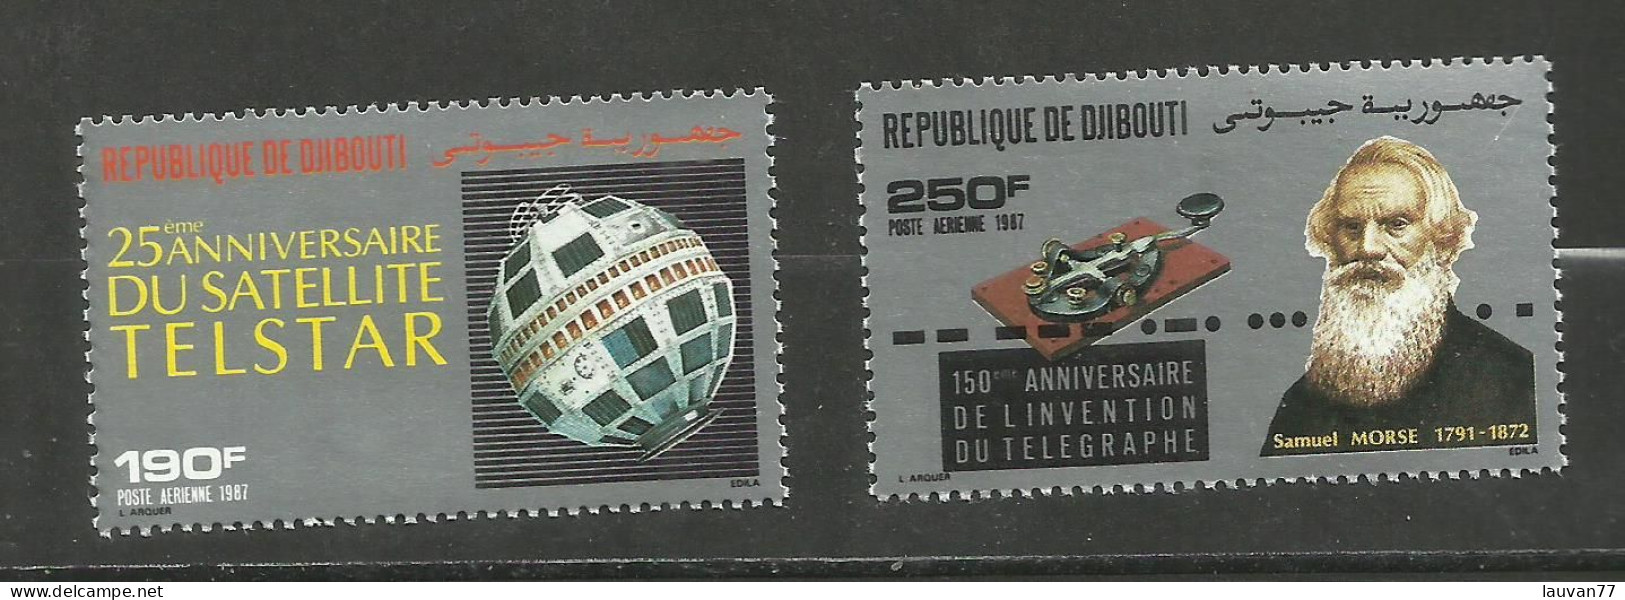 Djibouti POSTE AERIENNE N°237, 238 Neufs** Cote 8.35€ - Djibouti (1977-...)